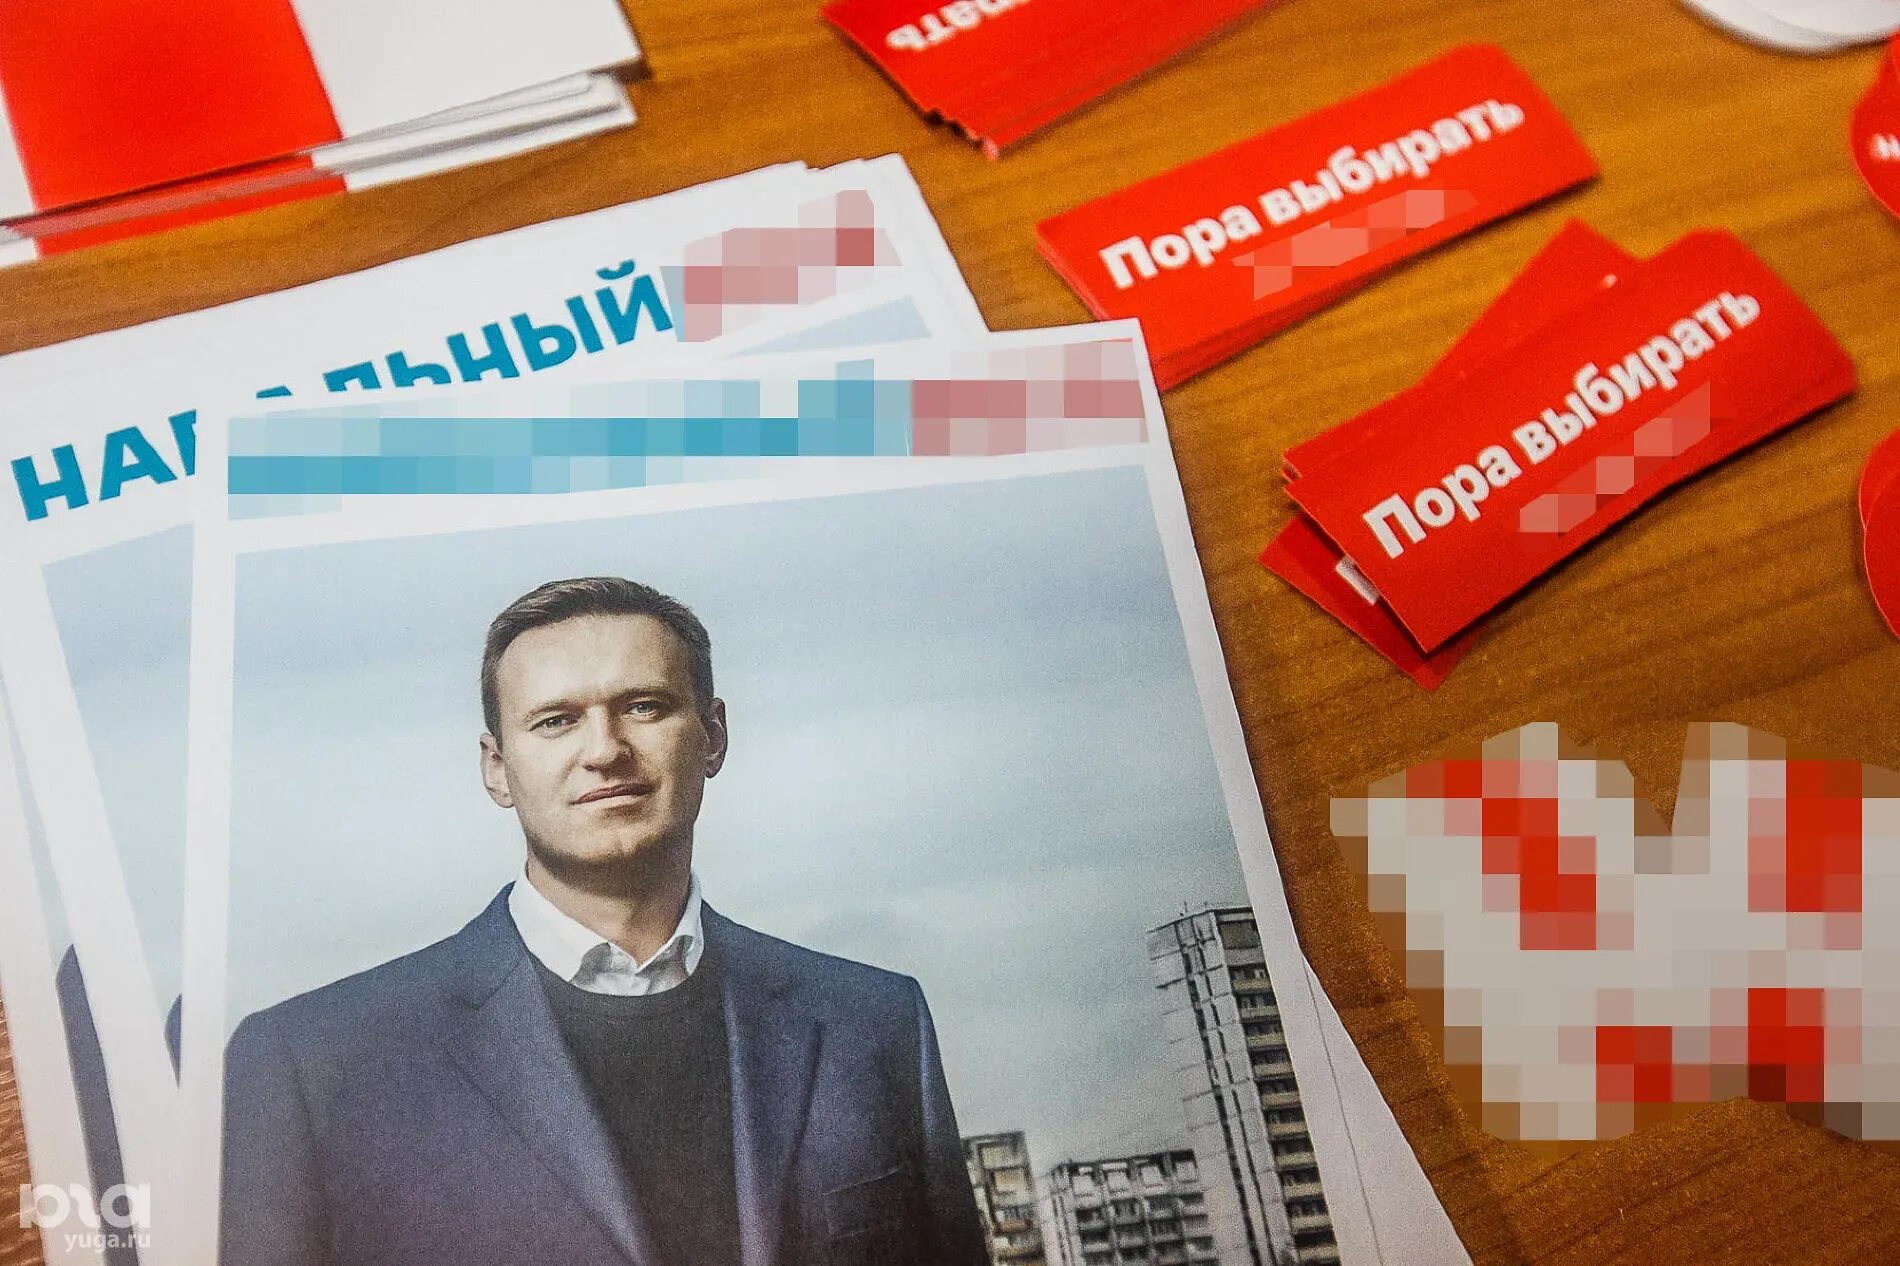 Листовки Навального. Агитационные листовки Навального. Навальный 2018 листовка. Навальный на выборах президента.